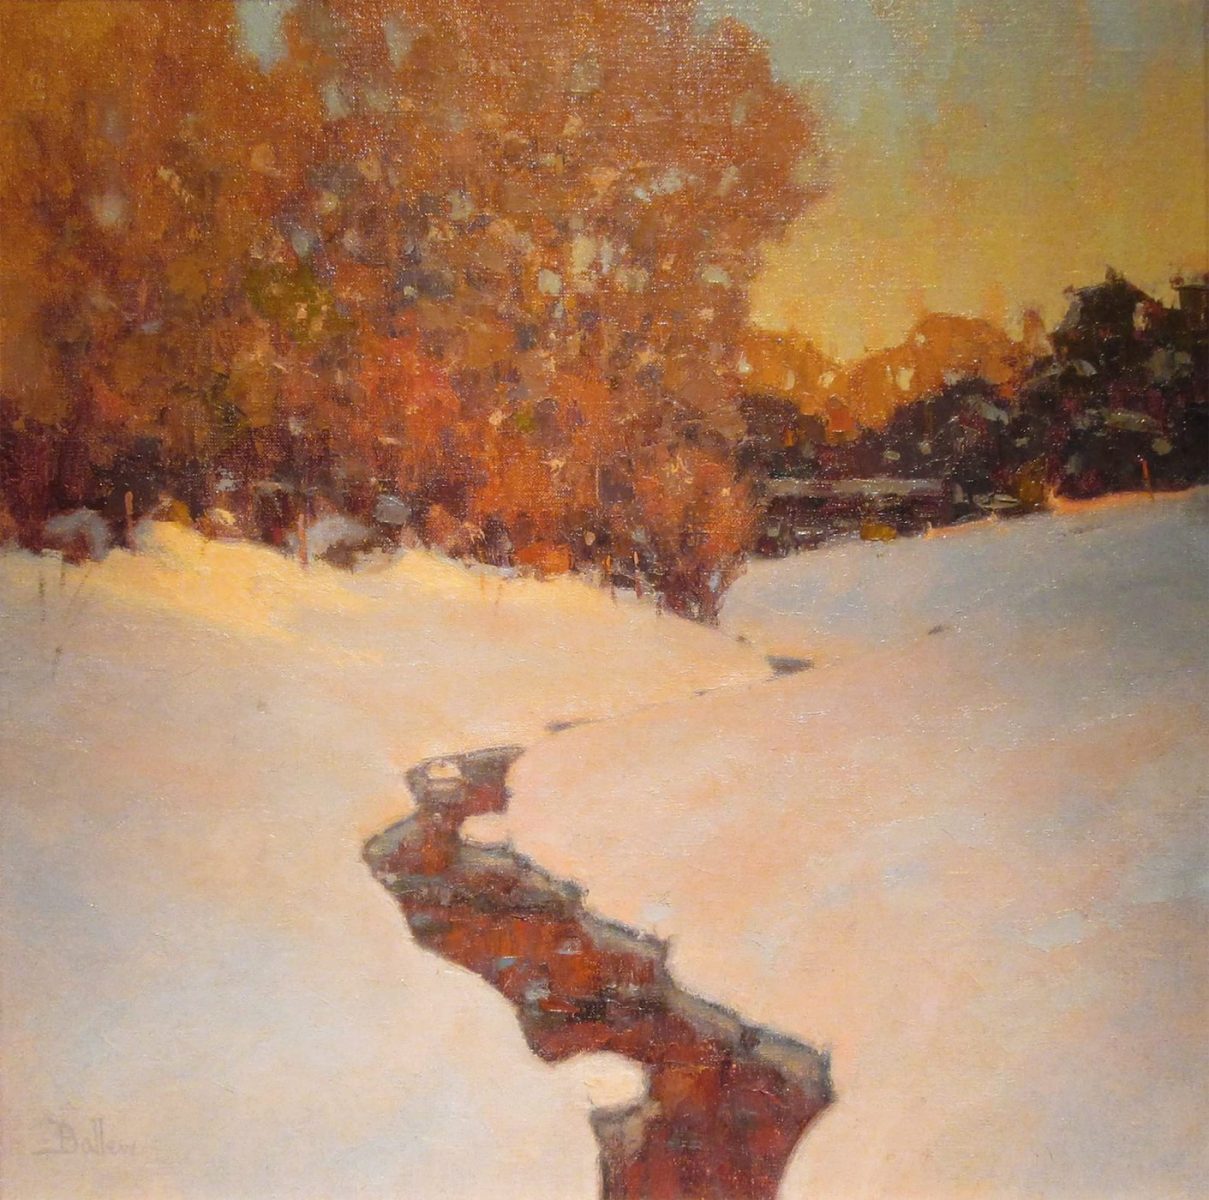 Winter Evening by David Ballew